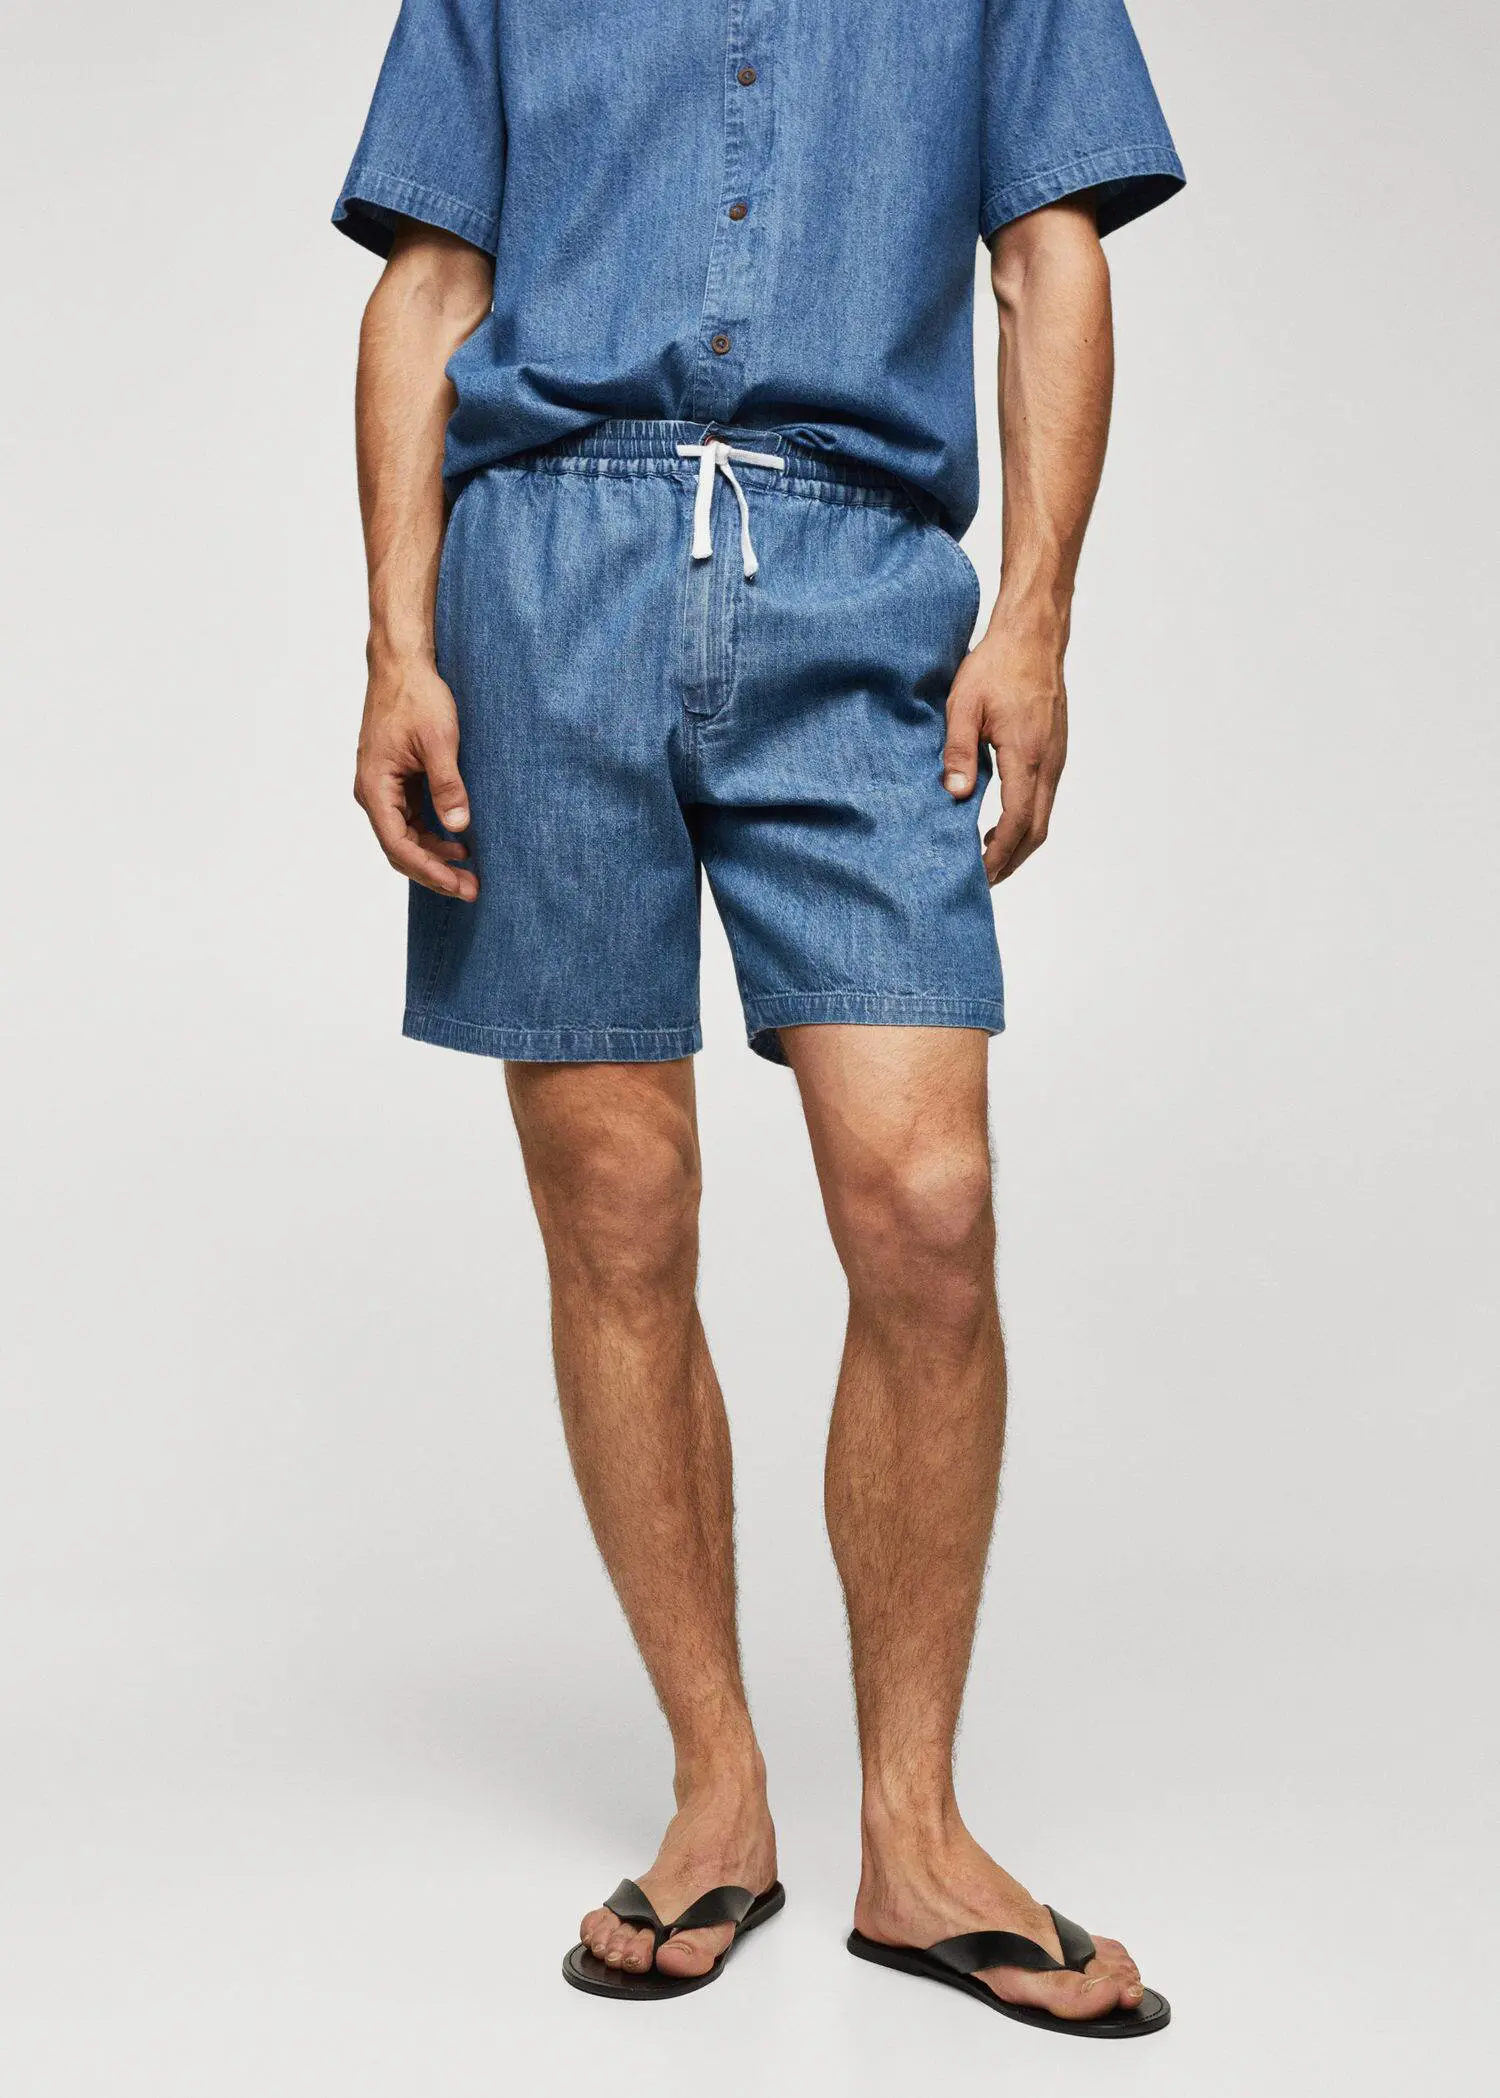 Mango Chambray Bermuda shorts. a man wearing a pair of blue shorts. 